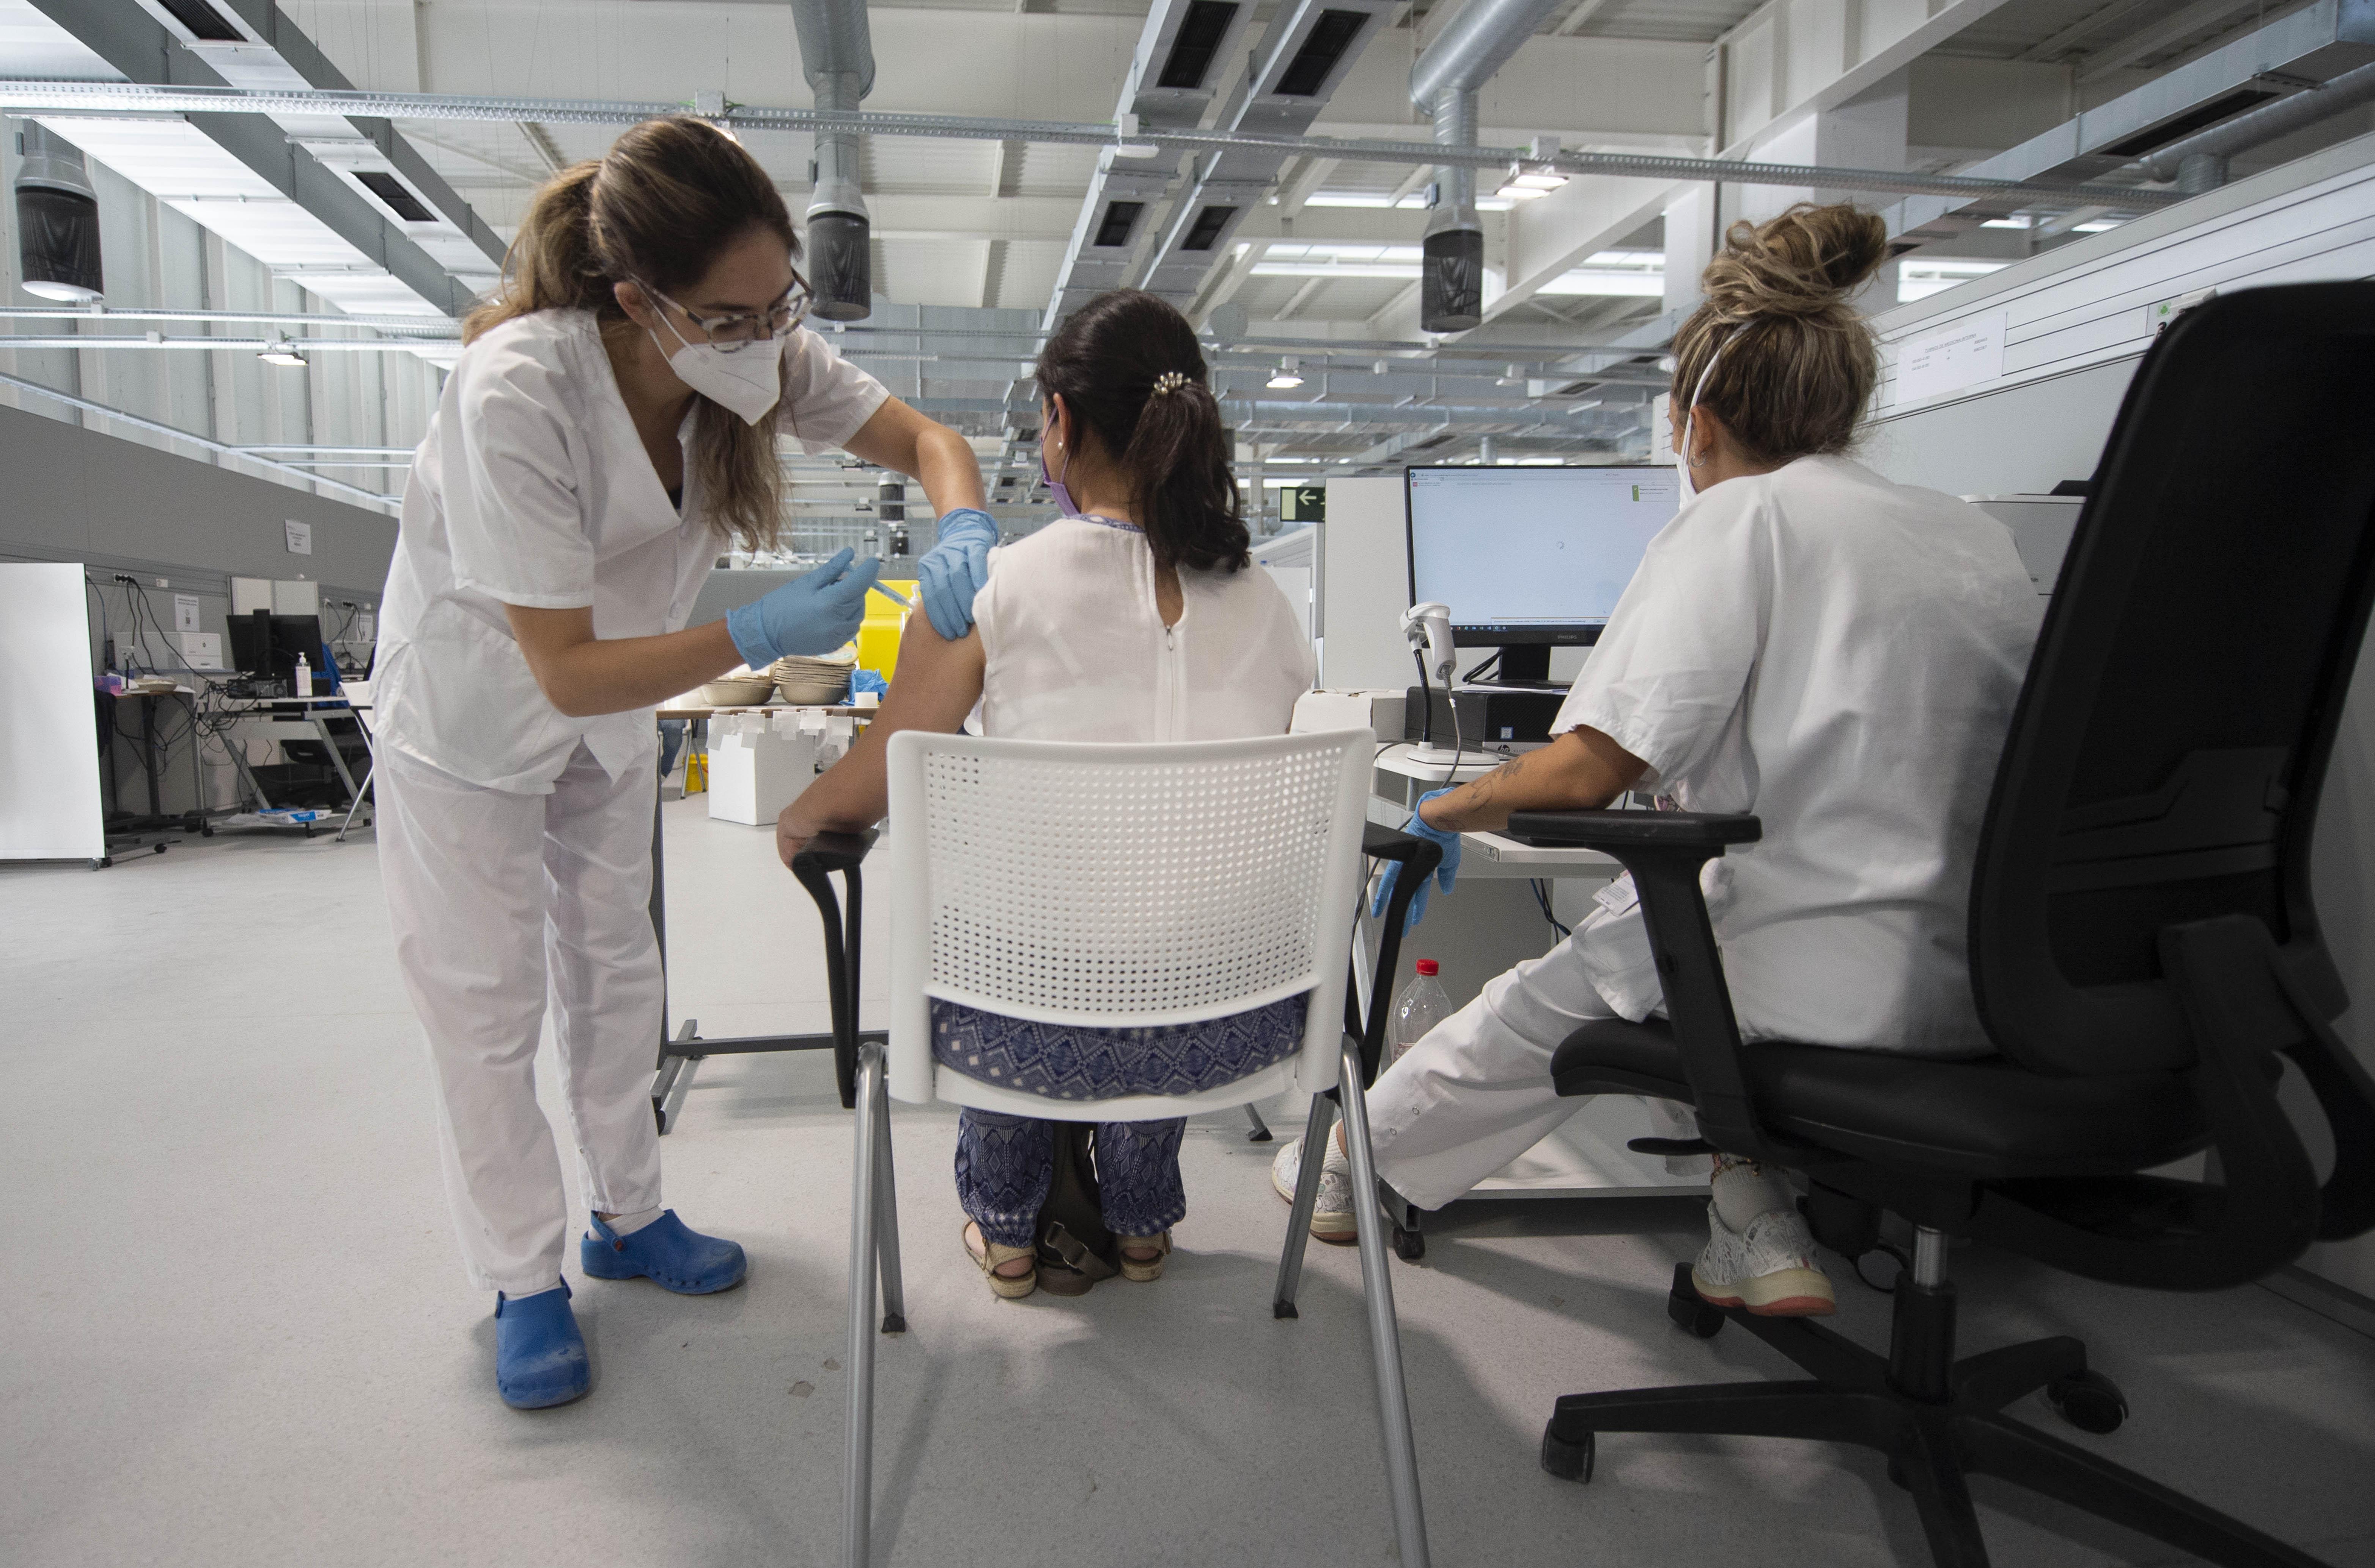 Una joven recibe la primera dosis de la vacuna Pfizer en el Hospital Zendal el día que comienza la vacunación a jóvenes madrileños a partir de 16 años, a 13 de julio de 2021, en Madrid (España). El pasado 9 de julio desde la Consejería de Sanidad de Madri